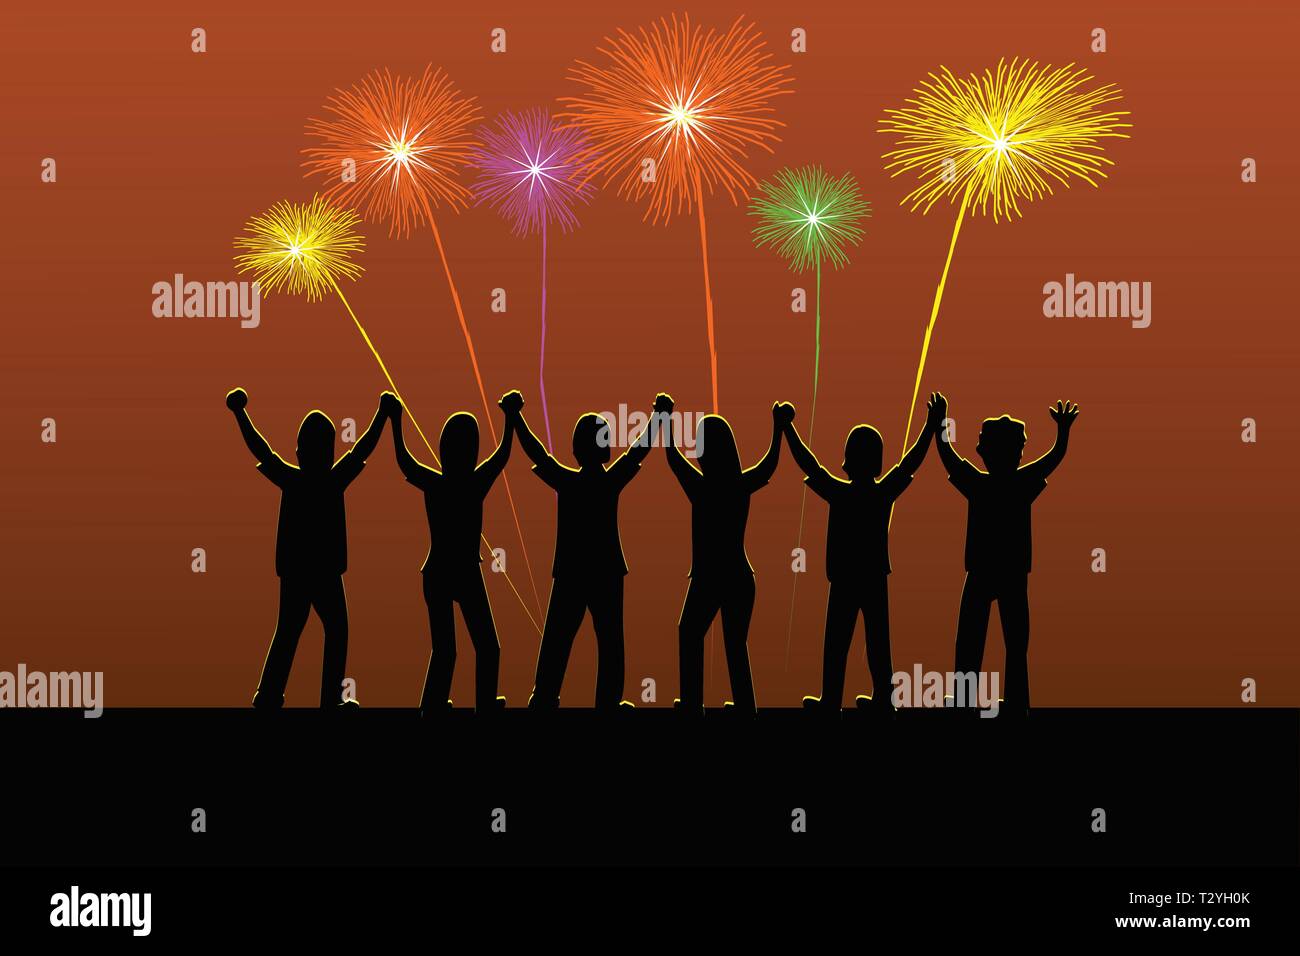 Sechs silhouette Menschen halten ihre Hände gerne wenn es Feuerwerk Blitz am Himmel. Stock Vektor